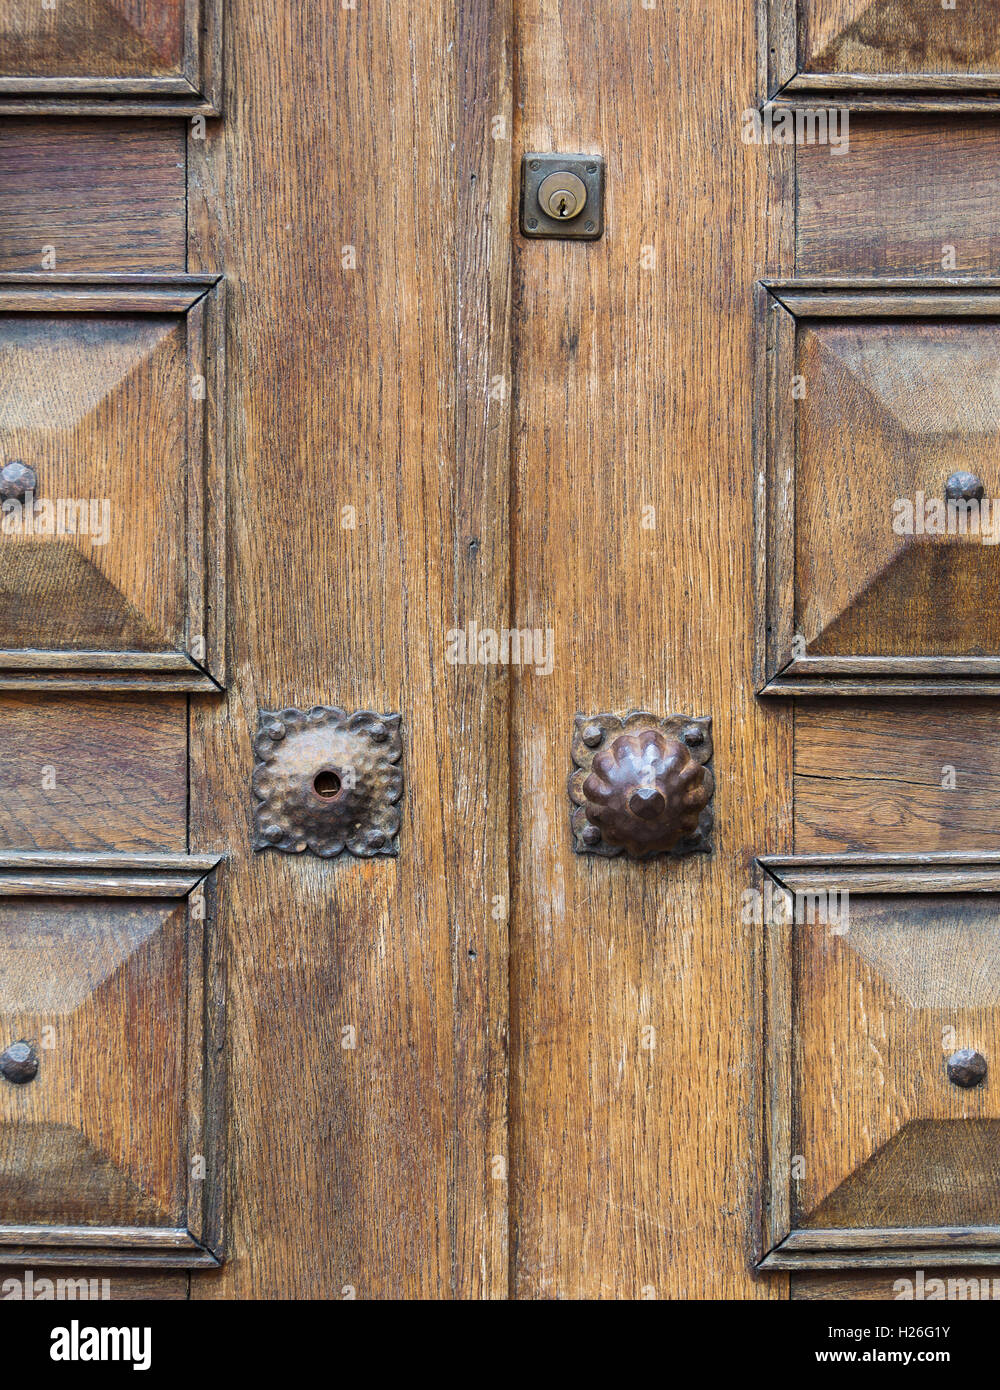 Elemento architettonico, la vecchia porta di legno di close-up Foto Stock